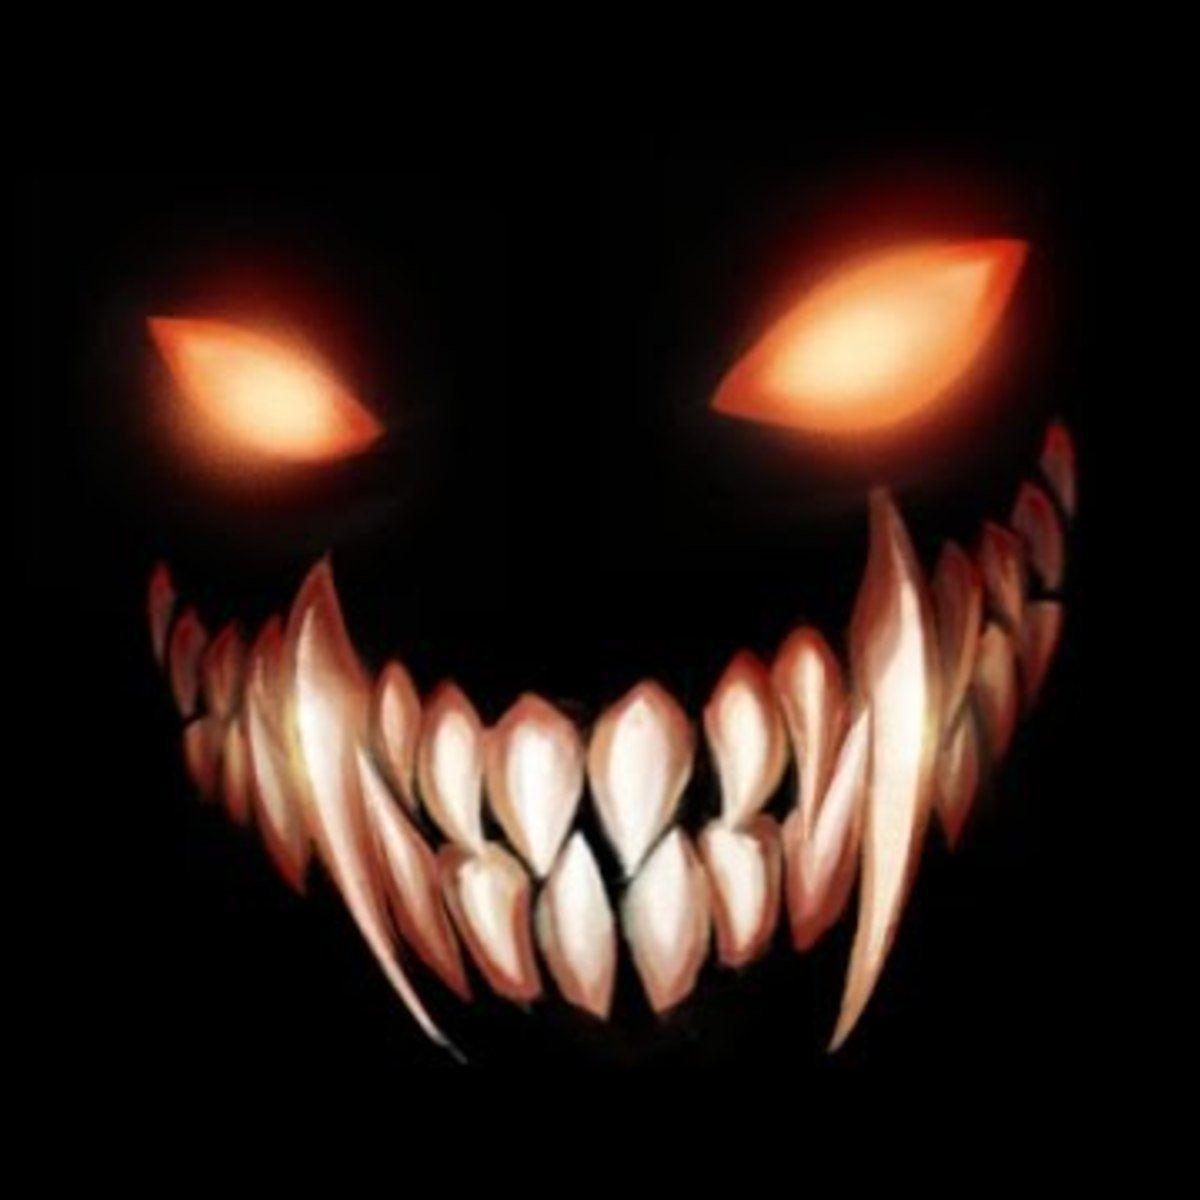 Дьявольская улыбка. Зловещая улыбка. Улыбка демона. Злобная улыбка.